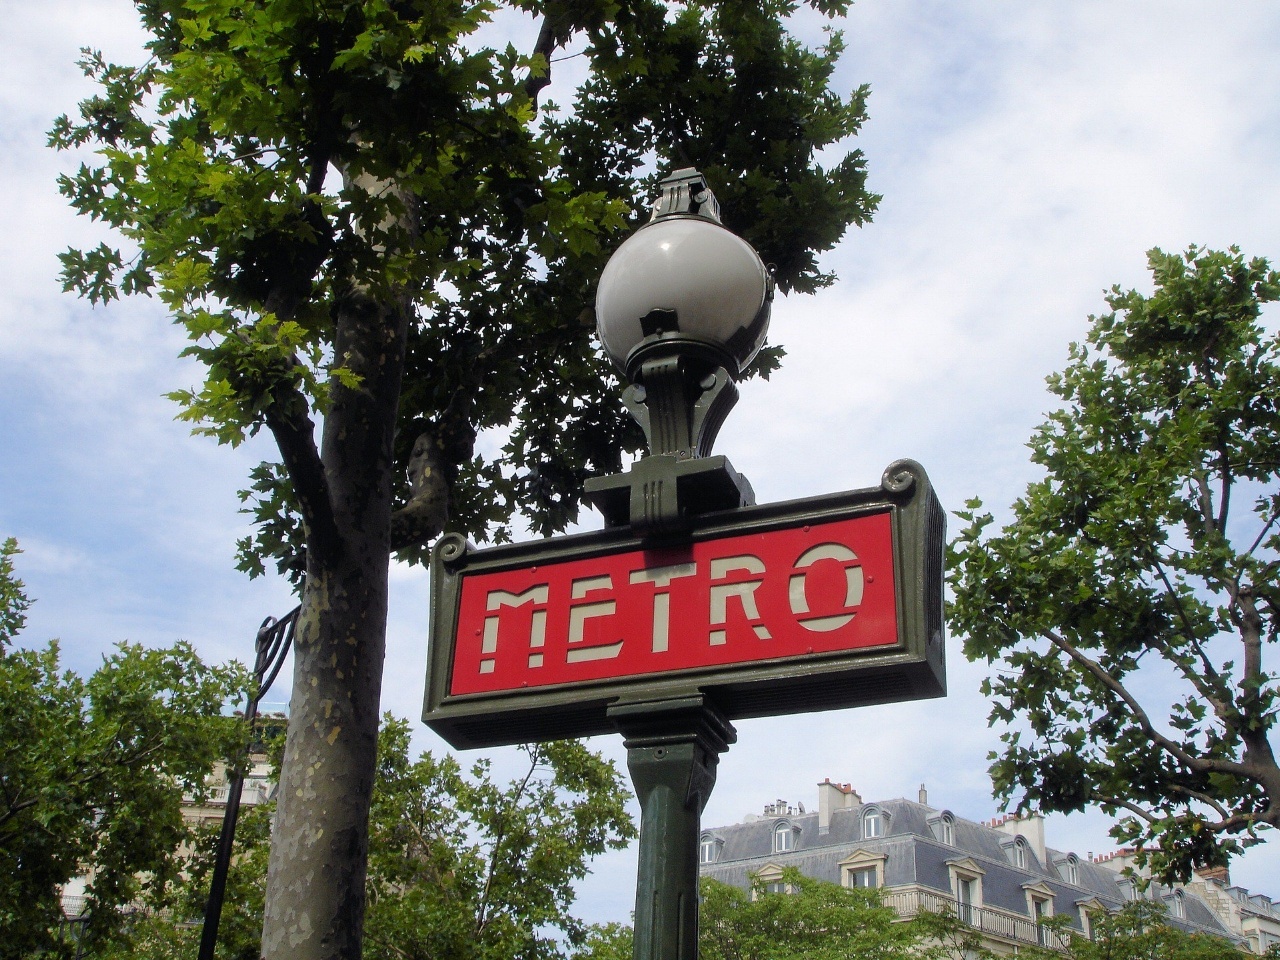 paris-metro-transport